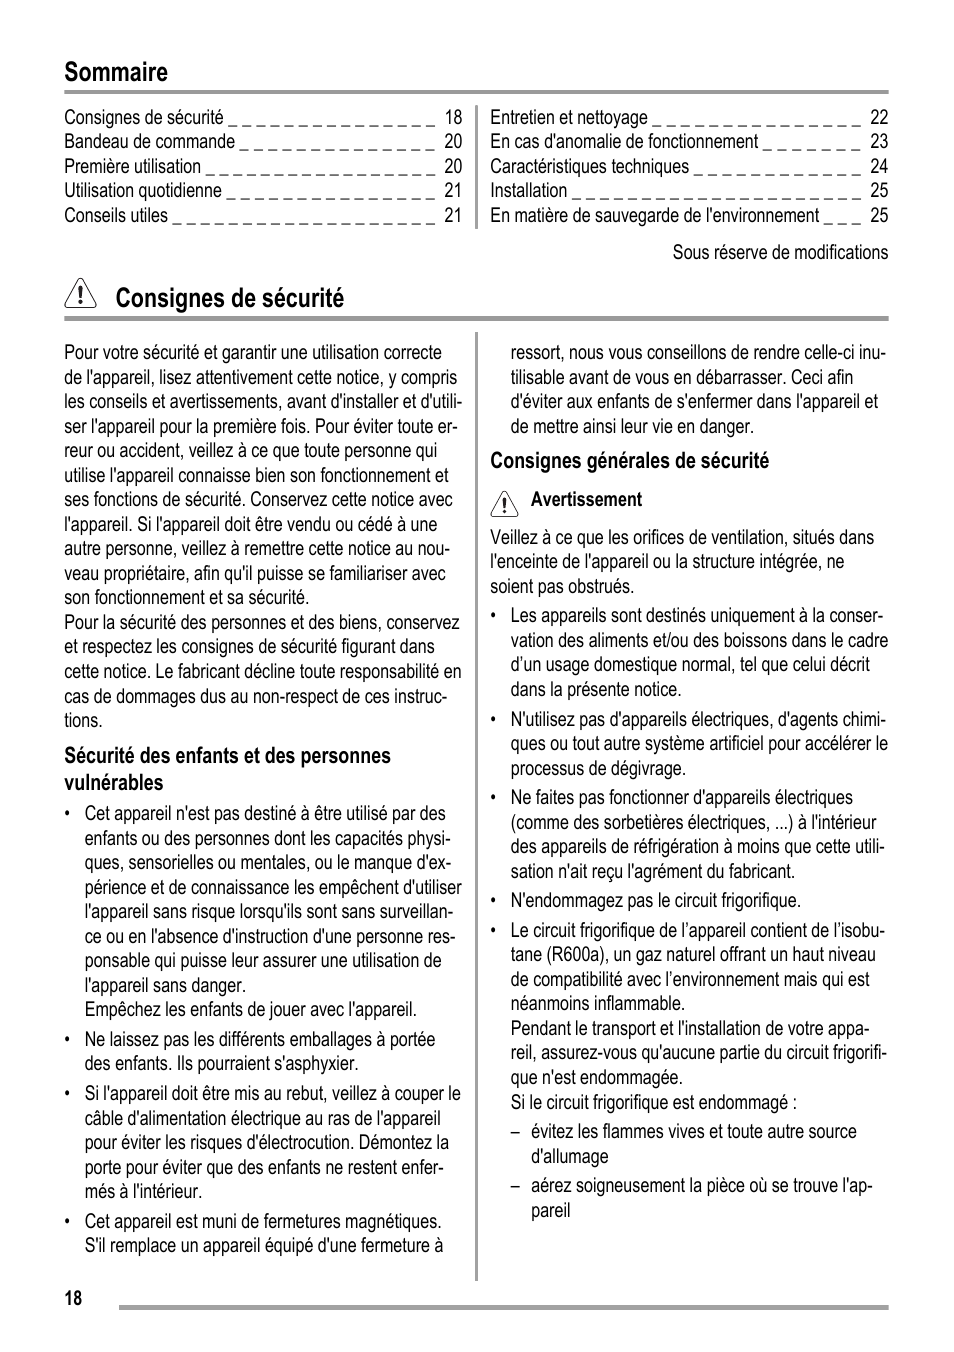 Sommaire, Consignes de sécurité | ZANKER ZKK 9008 User Manual | Page 18 / 36